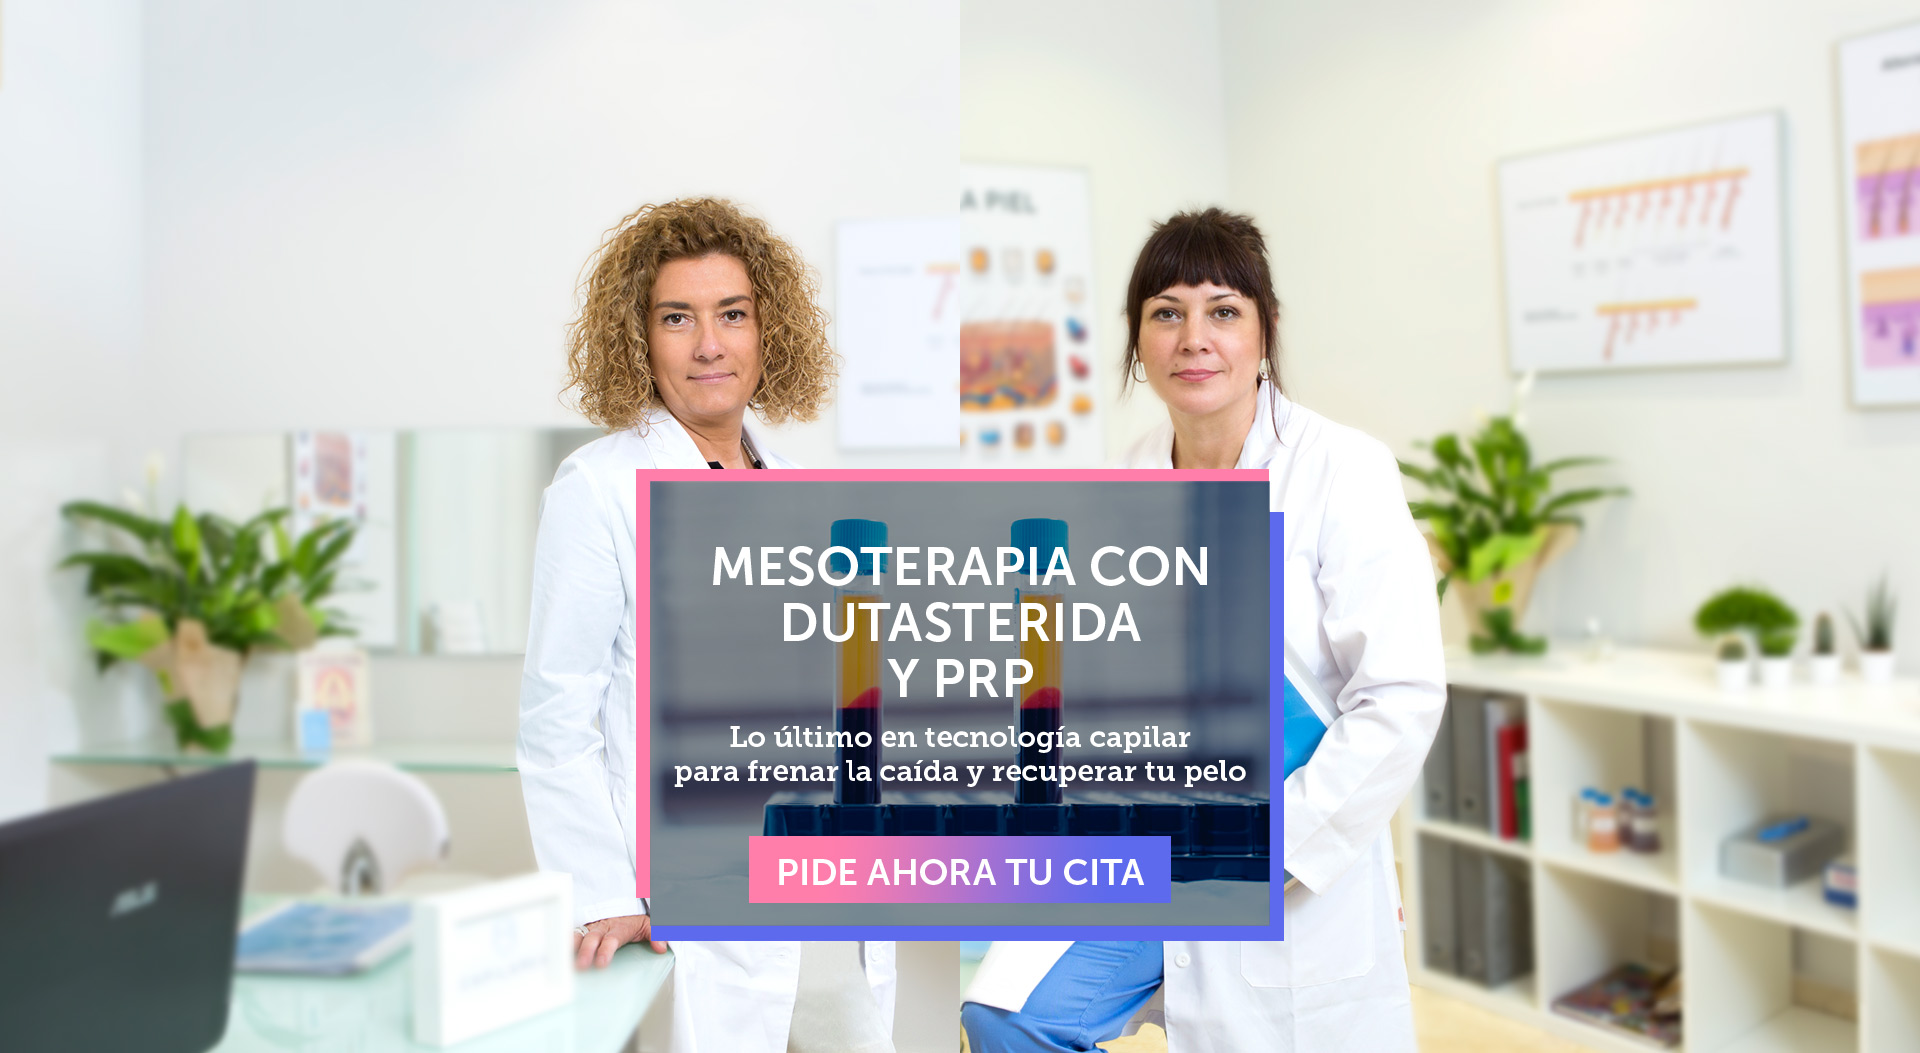 Mesoterapia con Dutasterida y PRP